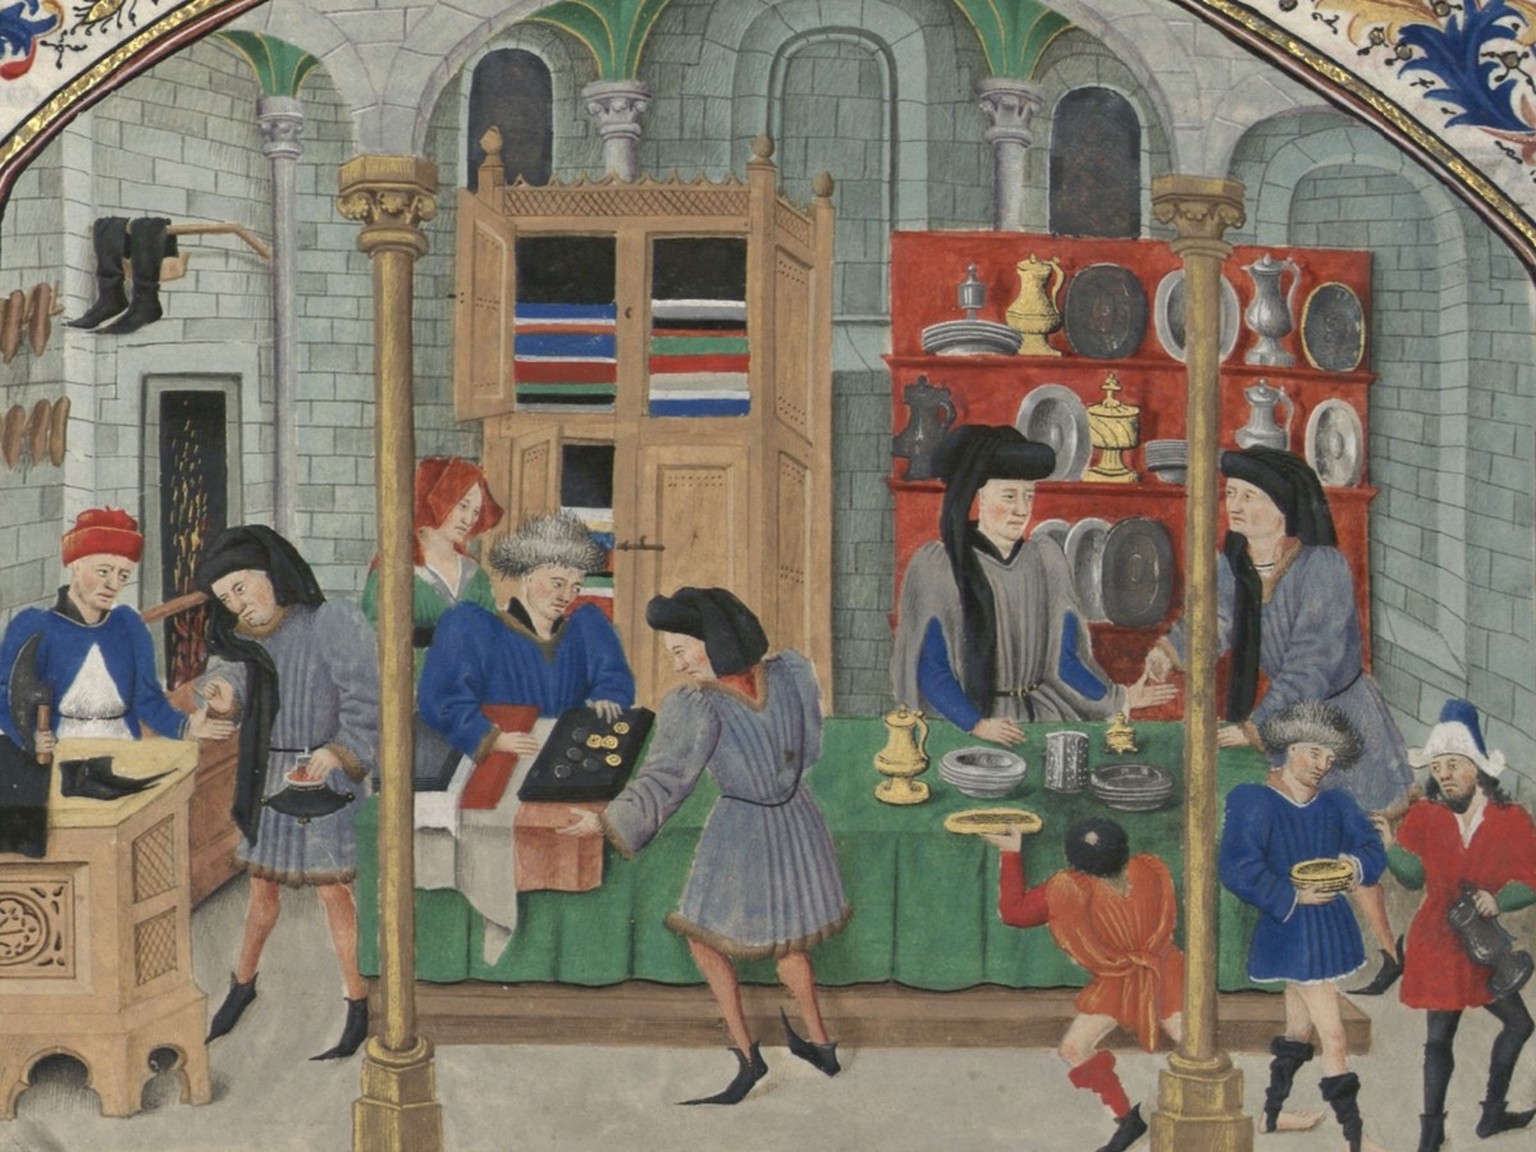 Sur un marché au XVe siècle: il n’y avait pas de mesures uniformes, mais un enchevêtrement de mesures différentes. Illustration d’une scène de marché dans un manuscrit de Nicolas Oresme, vers 1453.
ht ...